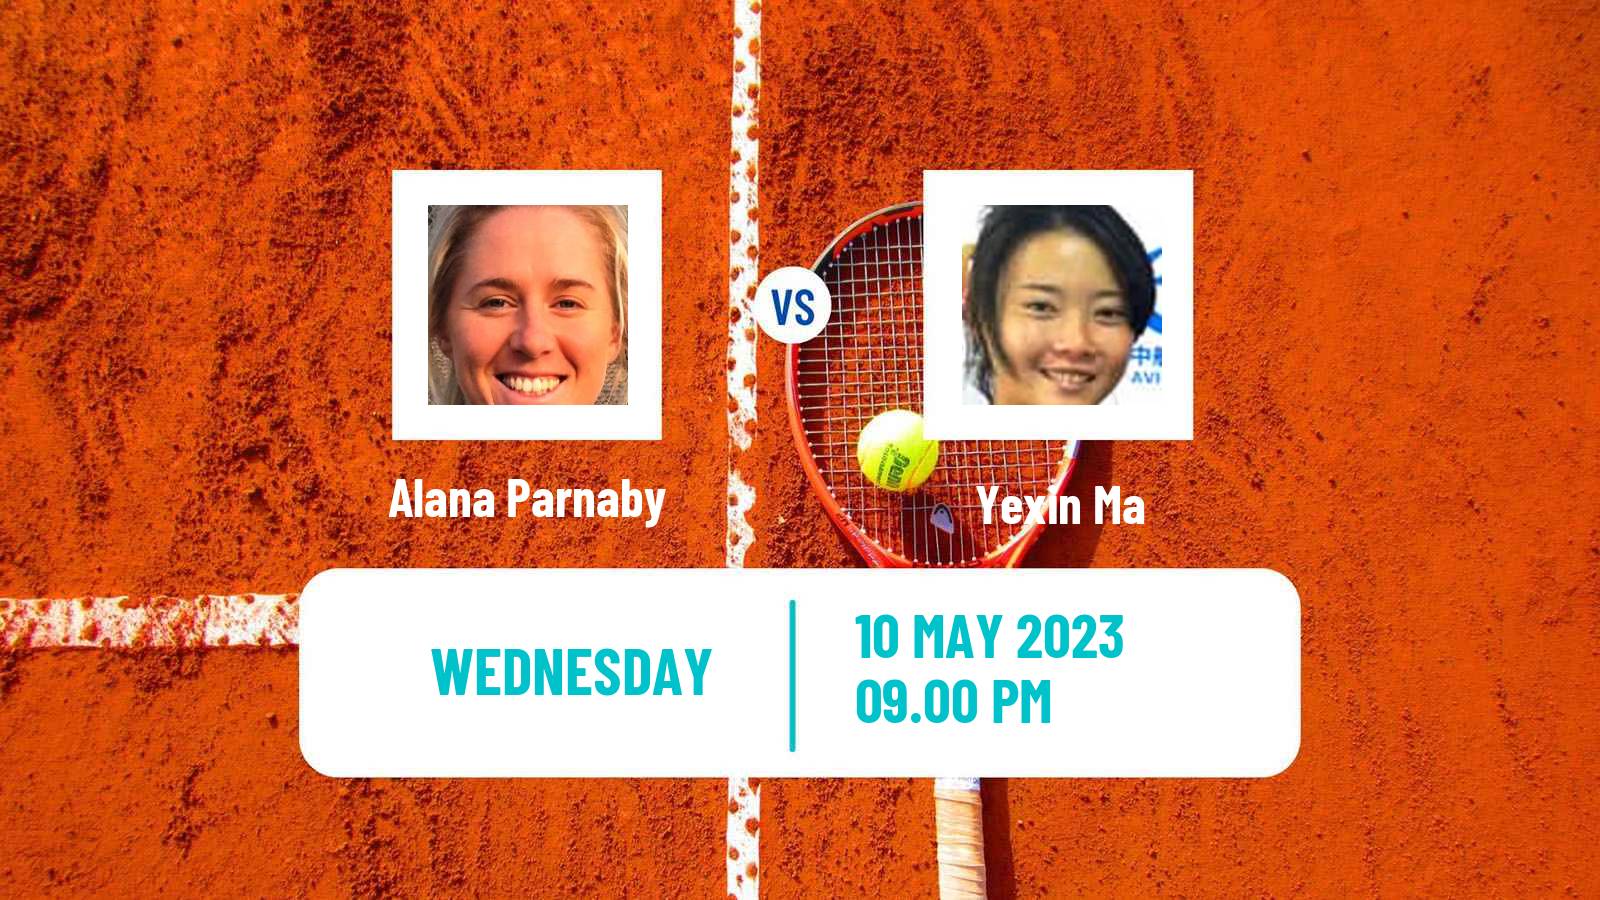 Tennis ITF Tournaments Alana Parnaby - Yexin Ma